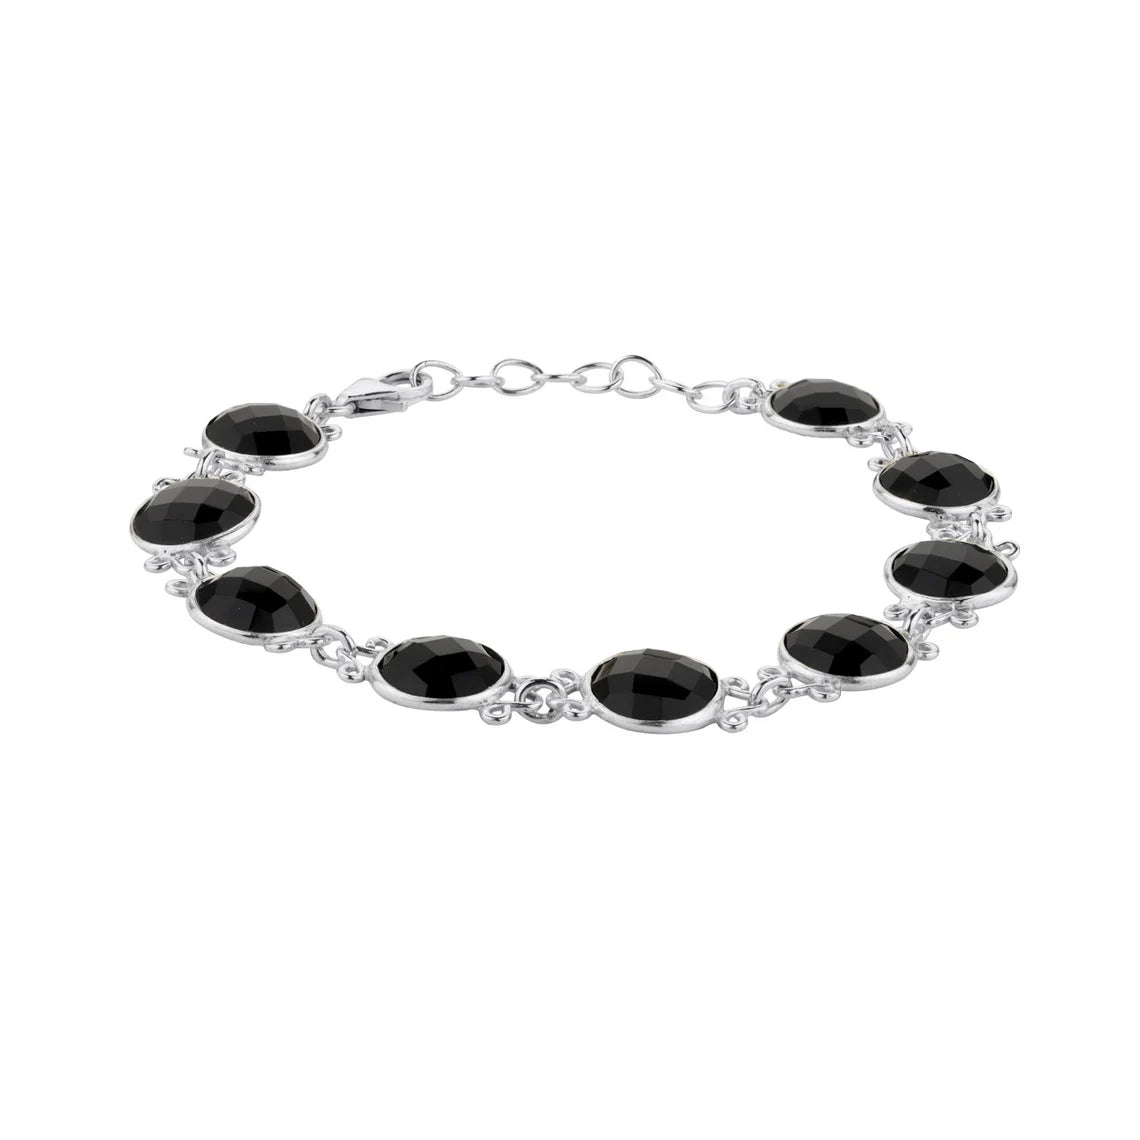 Black Onyx Wrap Bracelet, Black Onyx Bracelet, Black Onyx Jewelry, Protection Jewelry, Natural Crystal Bracelet, Silver Wrap Bracelet